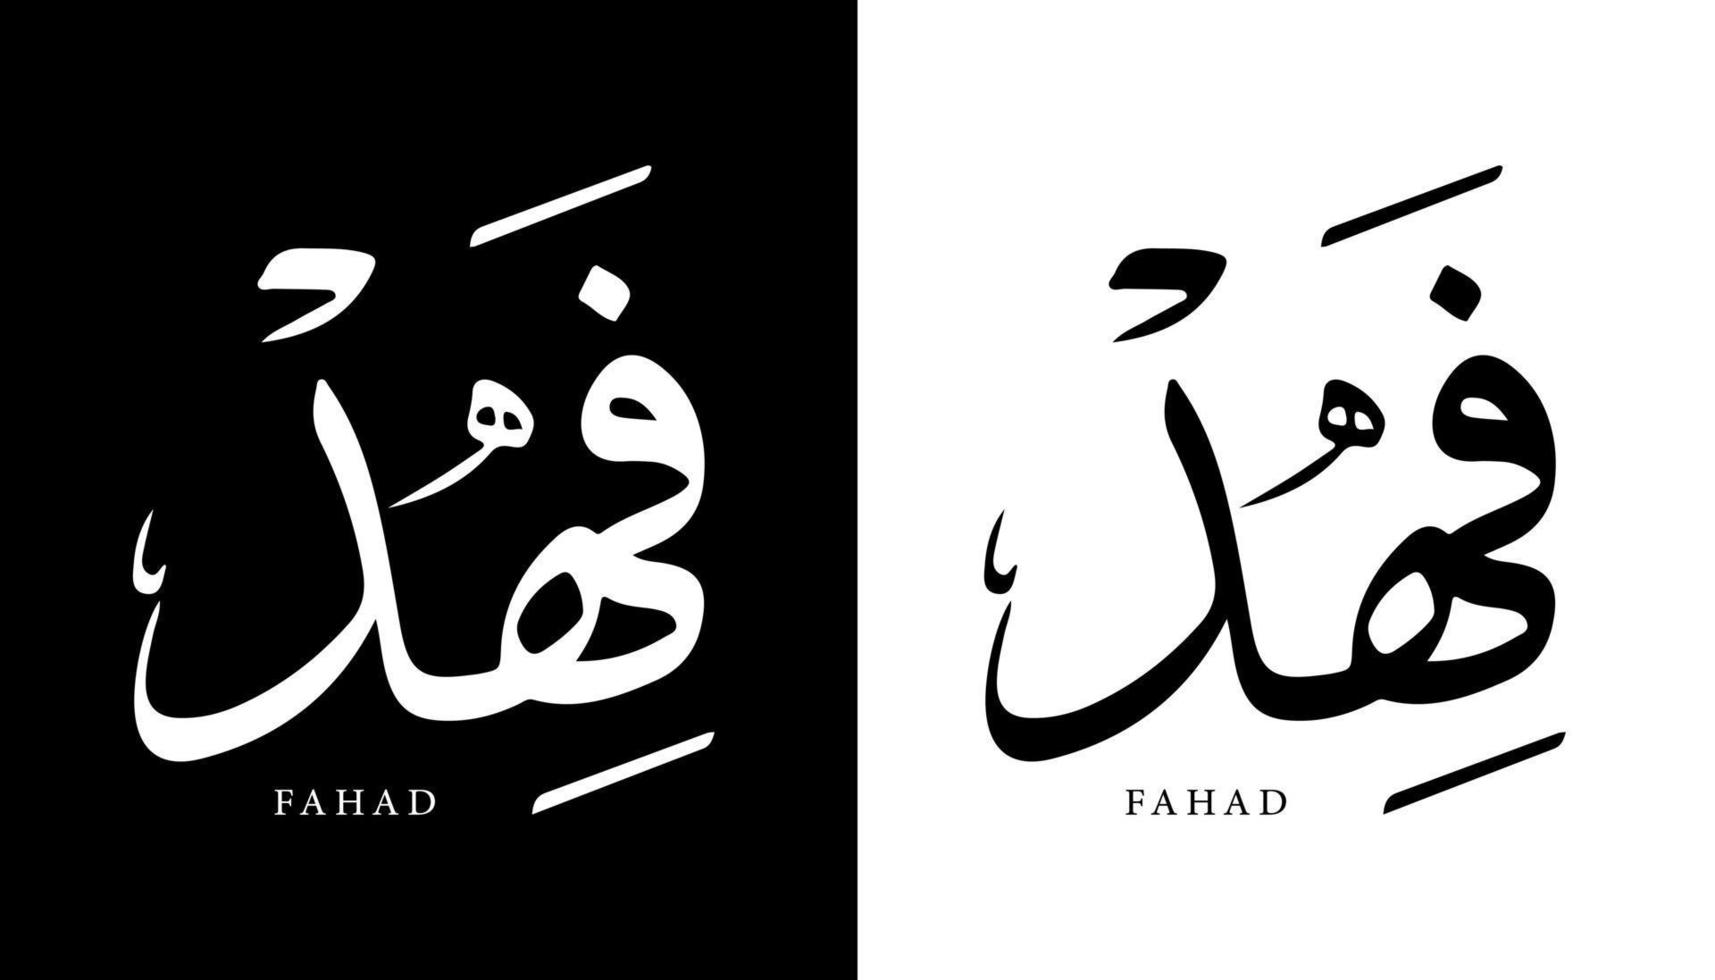 nome della calligrafia araba tradotto 'fahad' lettere arabe alfabeto font lettering logo islamico illustrazione vettoriale